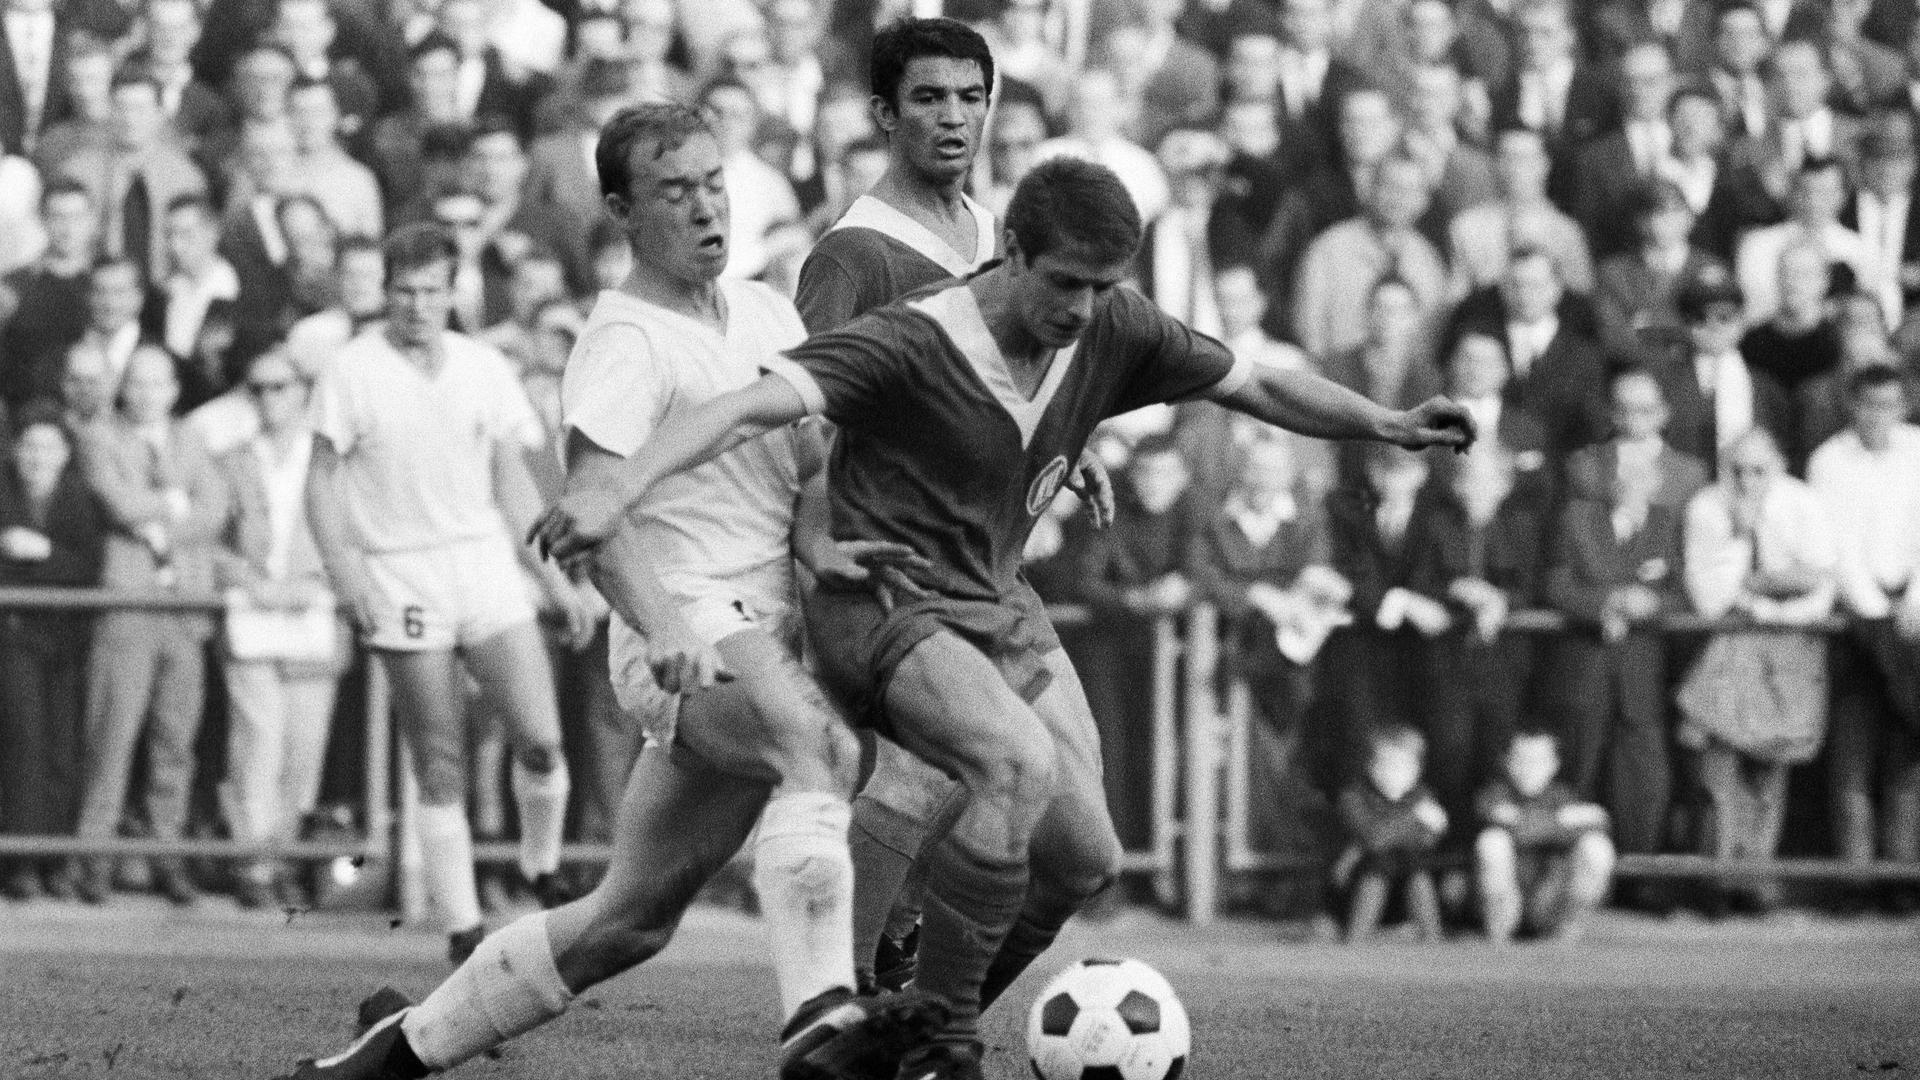 Kämpfernatur: Willi Dürrschnabel (rechts) bleibt in der Saison 1966/67 unter den Augen seines Karlsruher Mannschaftskameraden Dragolslav Sekularac zwar Sieger im Duell mit dem Mönchengladbacher Bernd Rupp, unterliegt mit dem KSC bei den Borussen aber mit 1:3. 